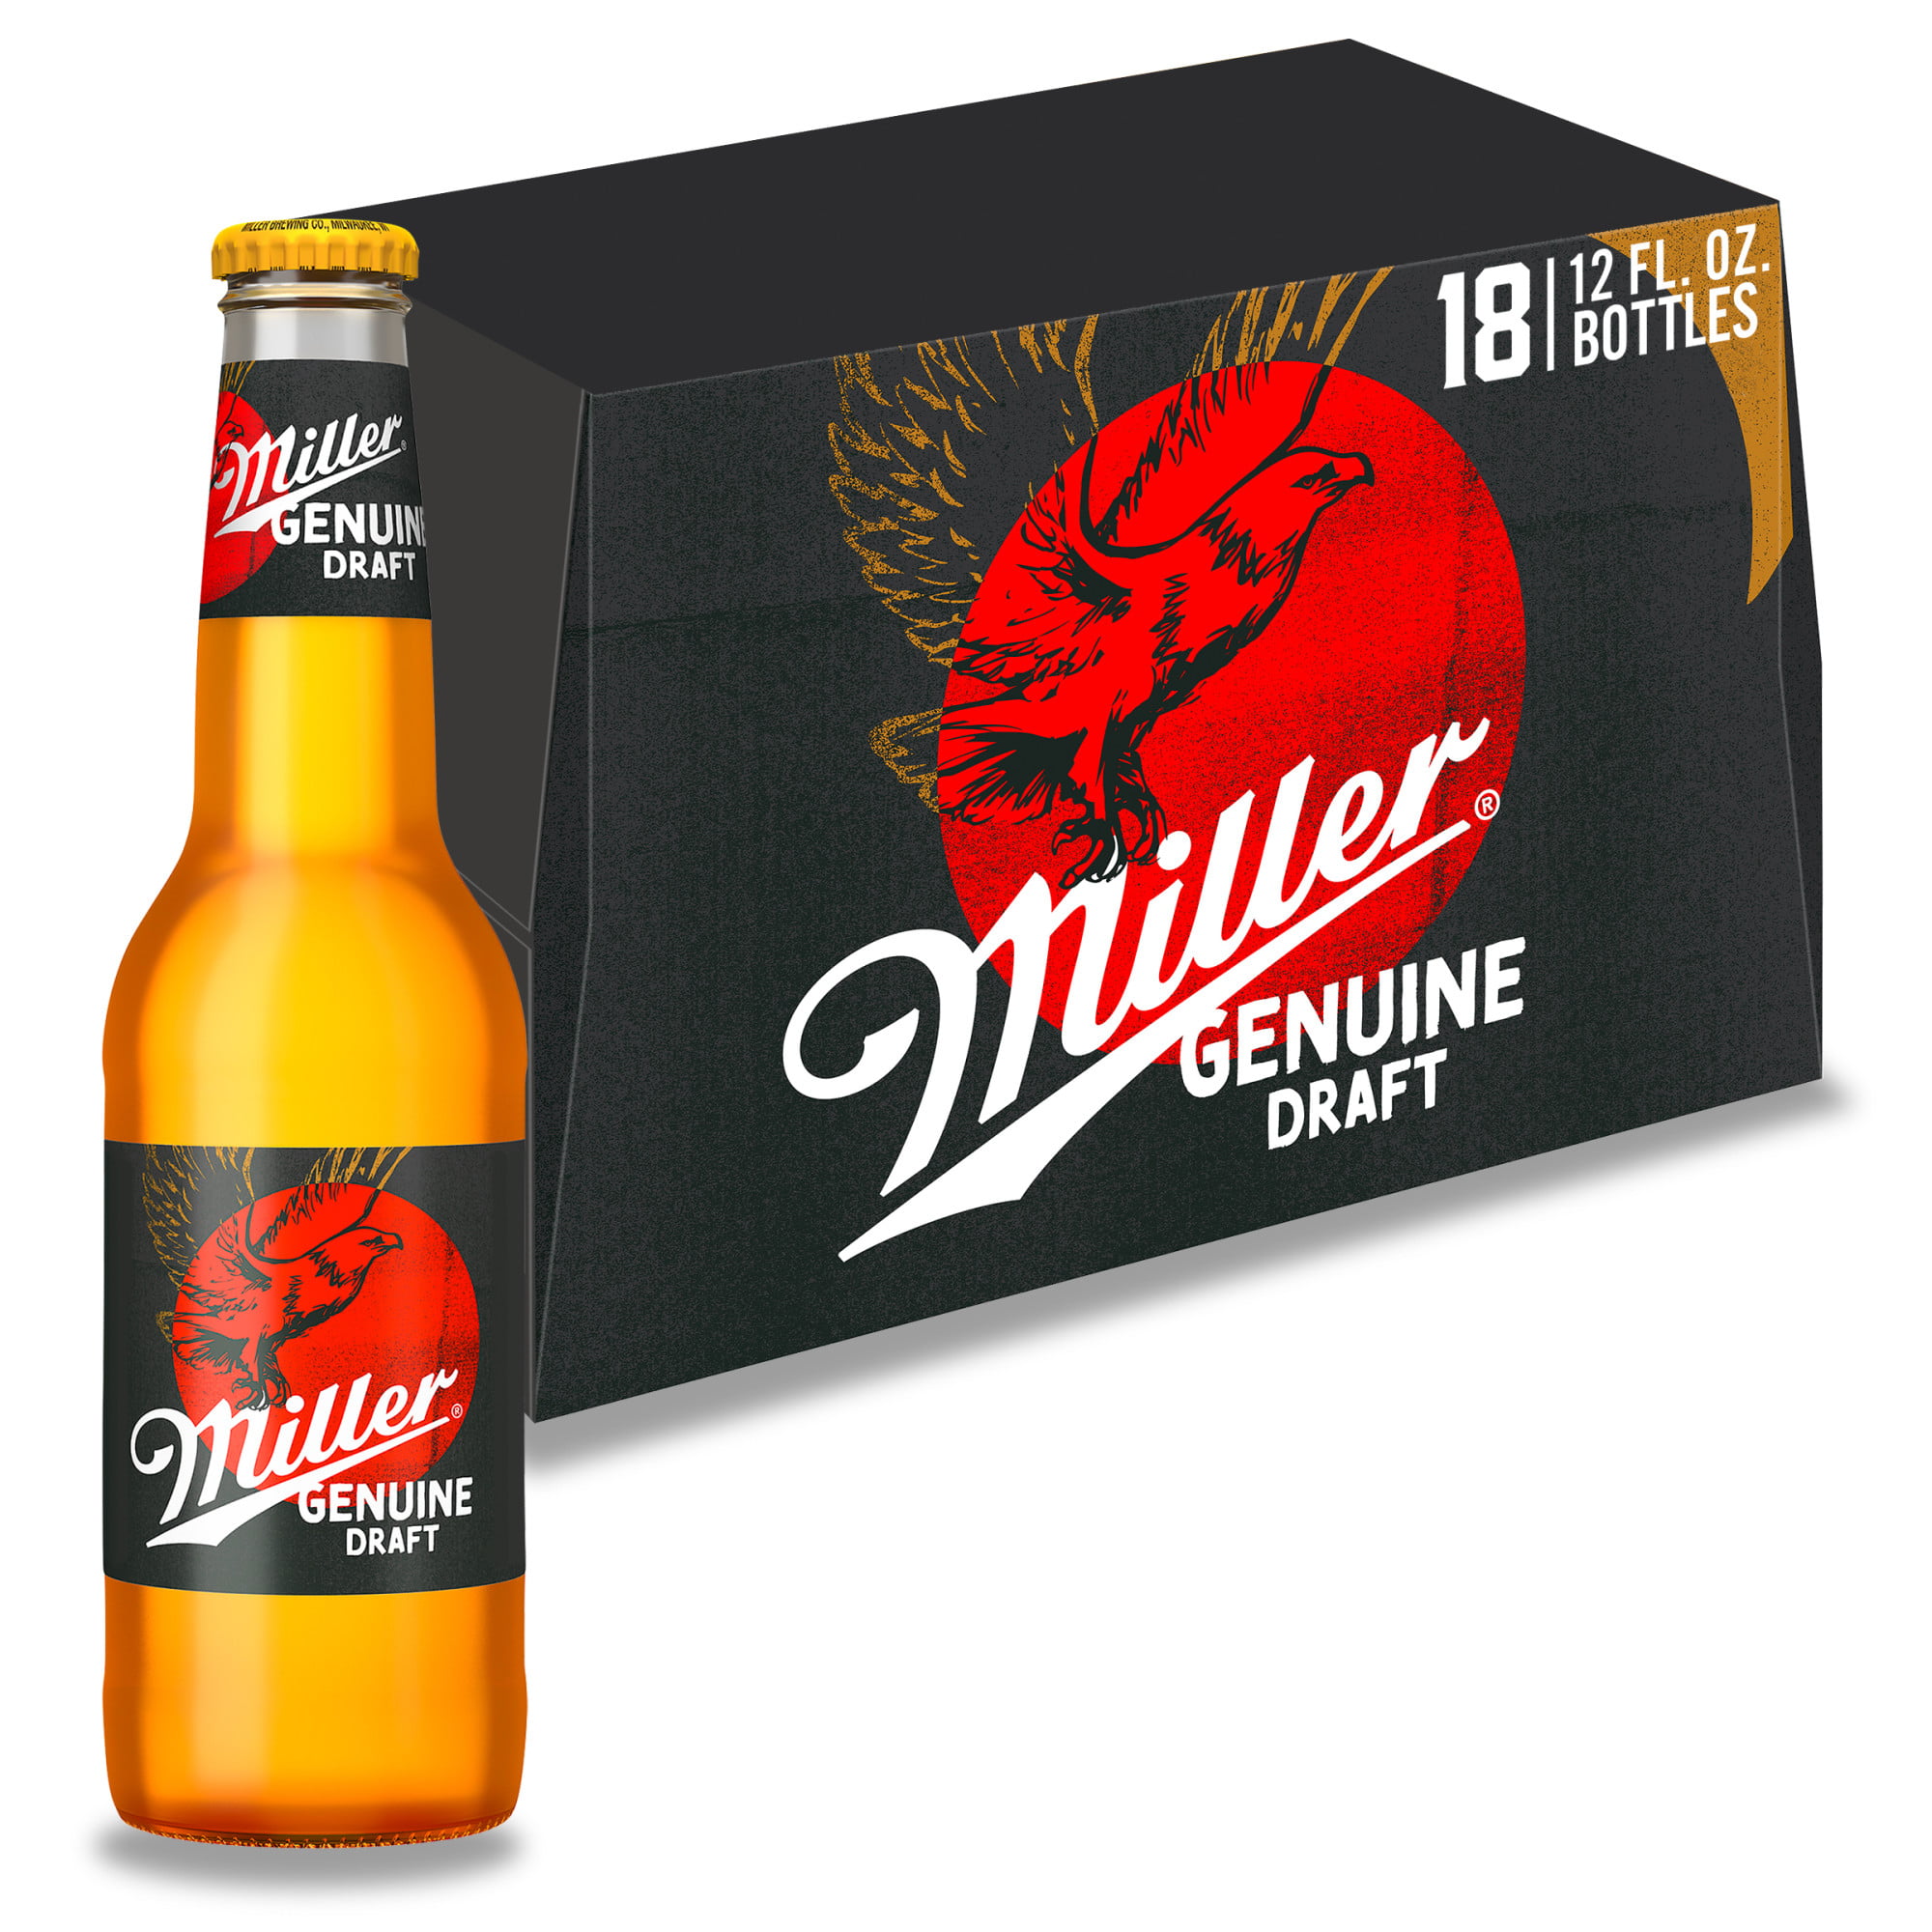 Миллер Дженьюин ДРАФТ. Miller Genuine Draft пиво. Miller пиво. Купить пиво миллер